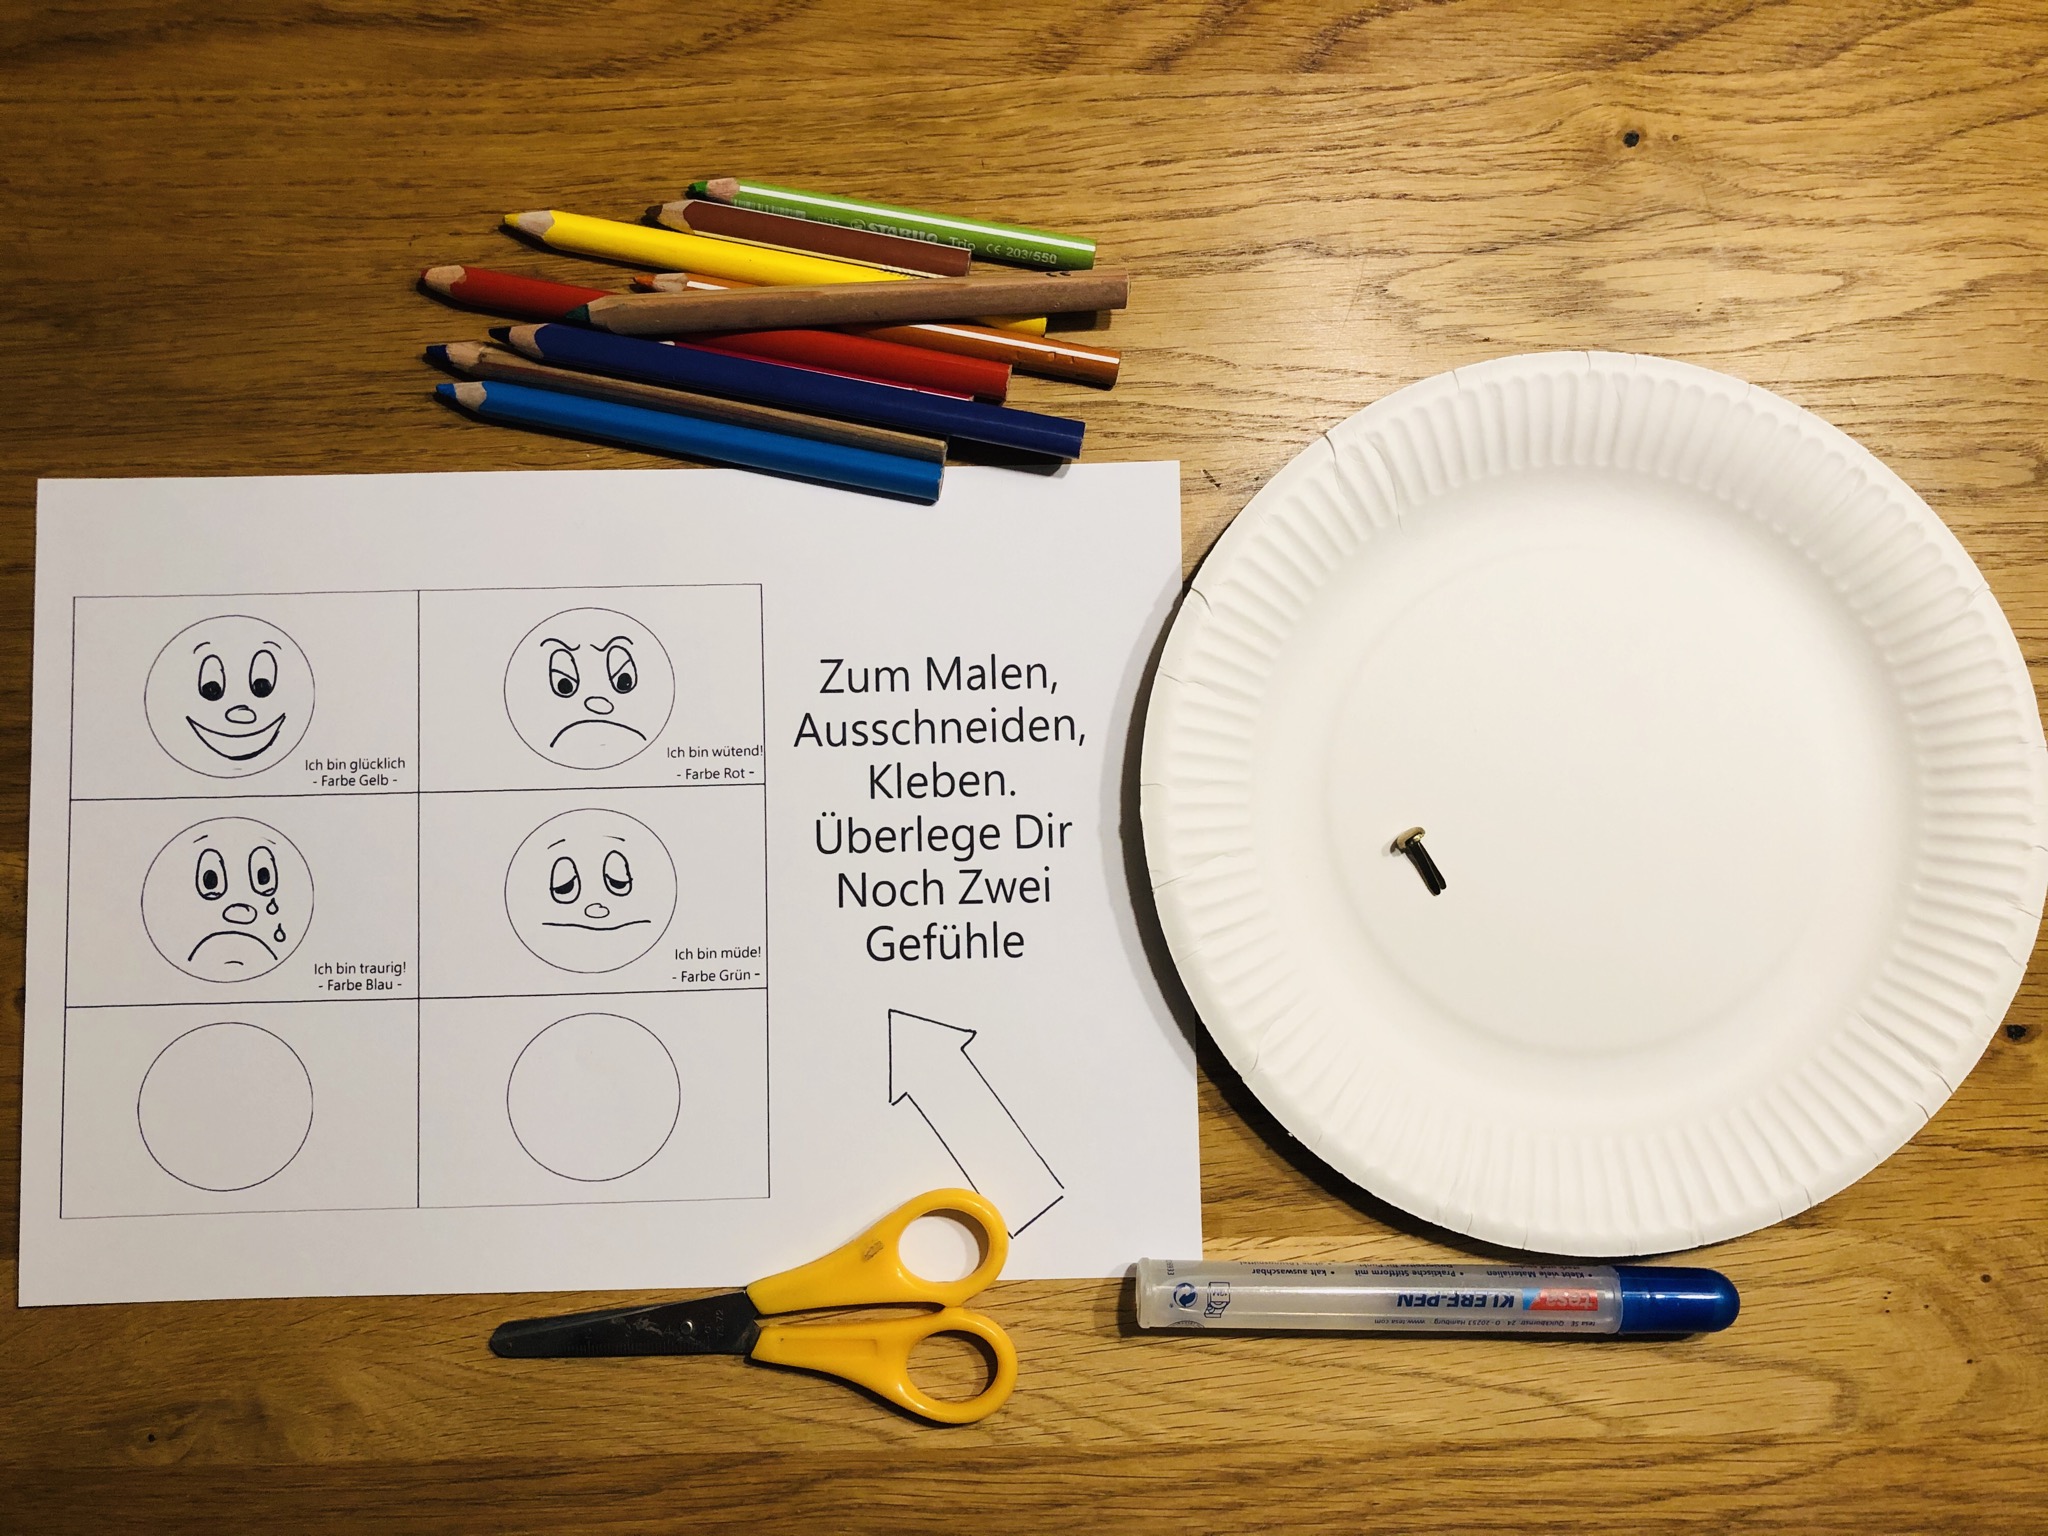 Bild zum Schritt 1 für das Bastel- und DIY-Abenteuer für Kinder: 'Material vorbereiten und ggf. auf Tischunterlage achten.'